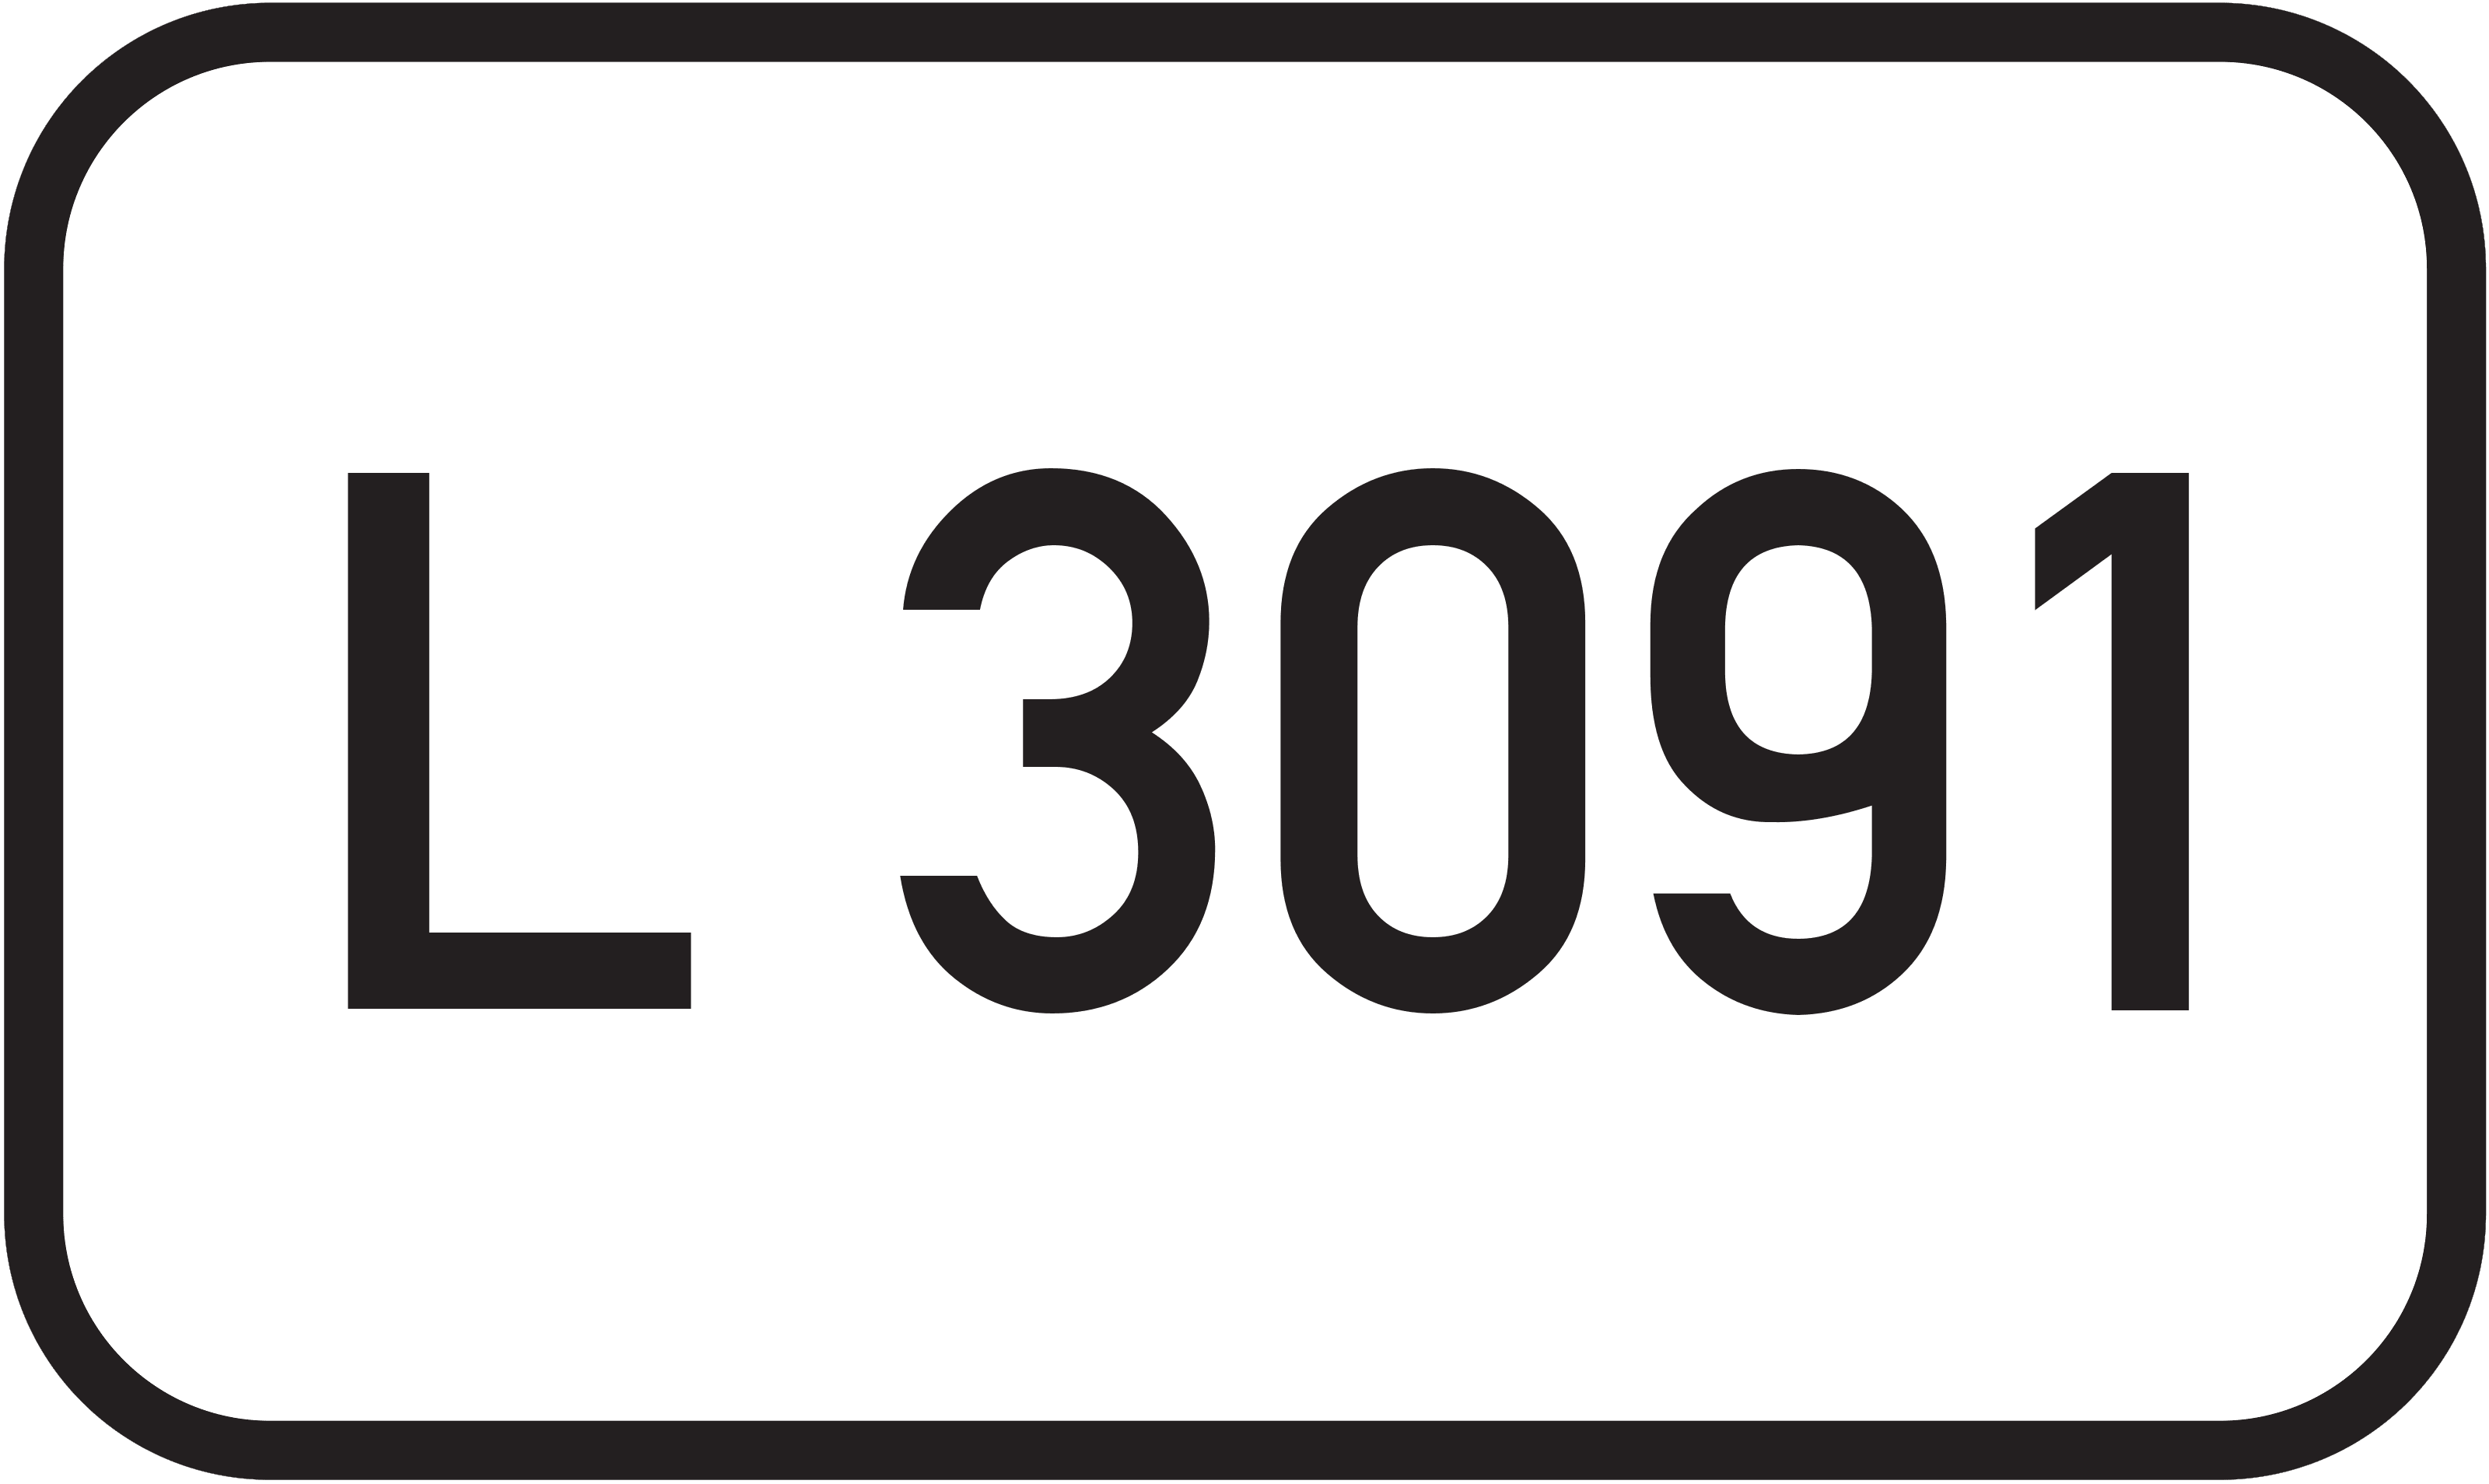 Landesstraße L 3091